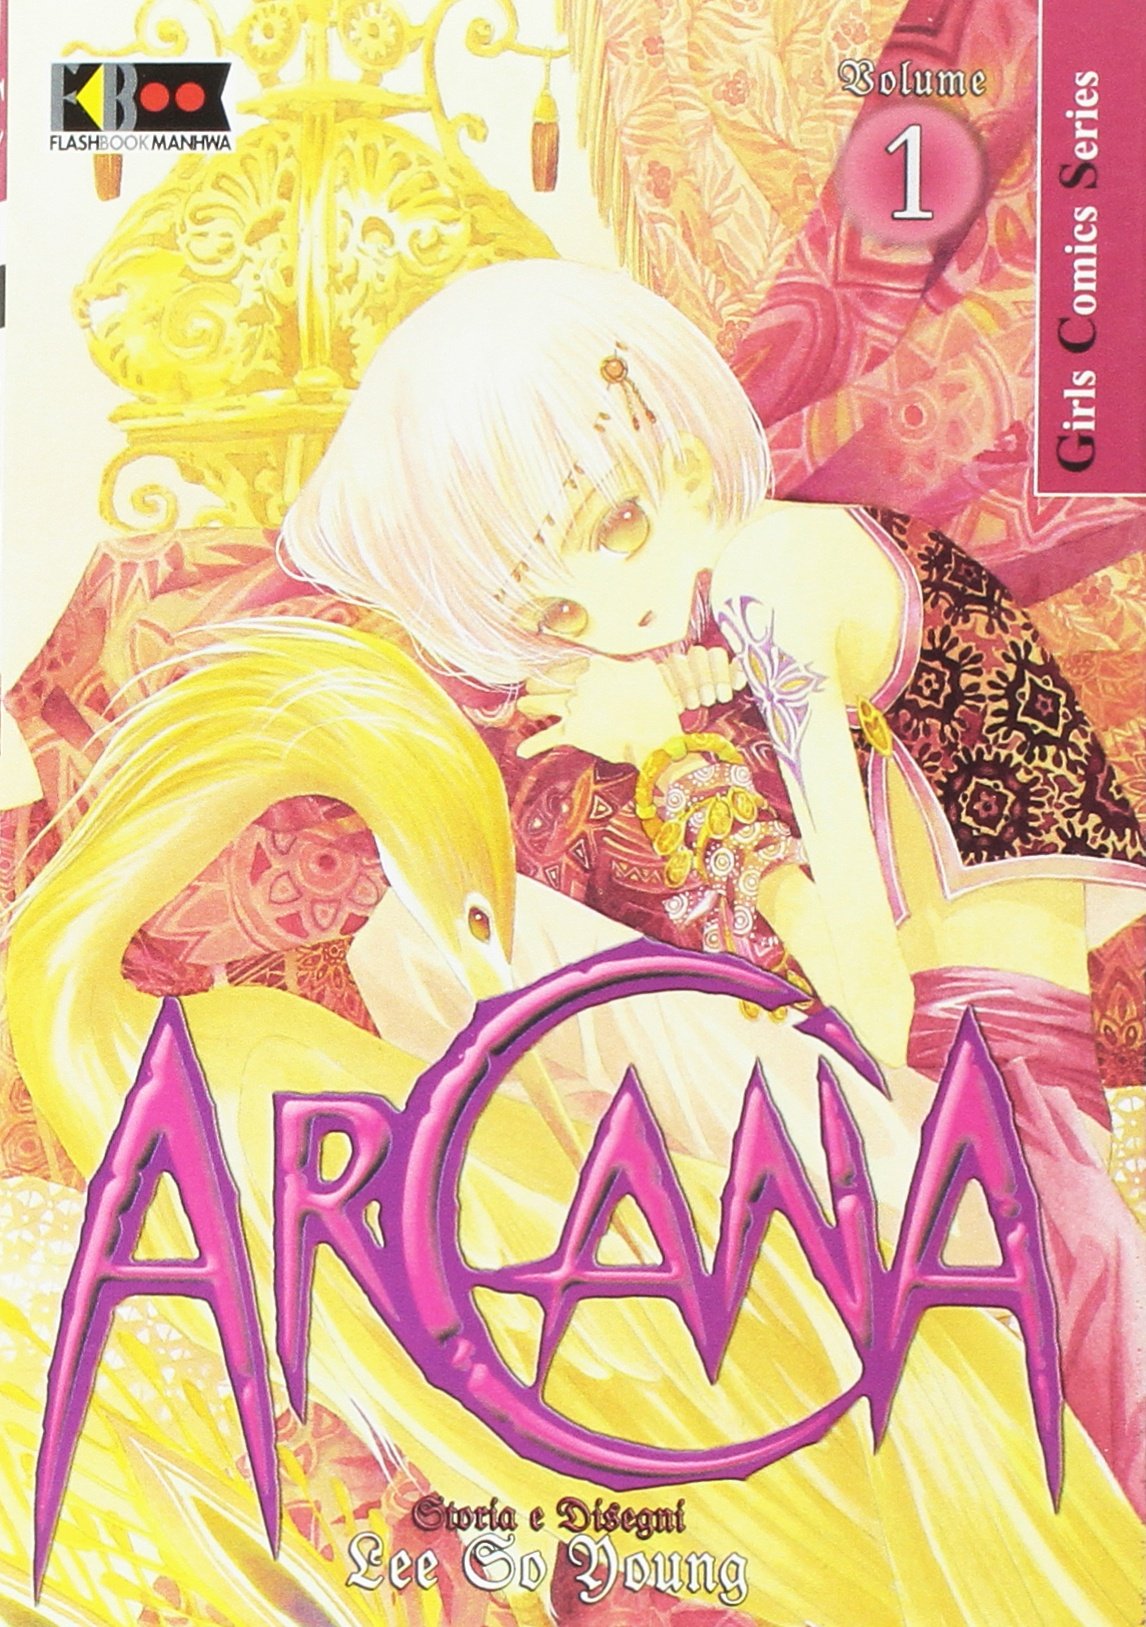 Arcana #01